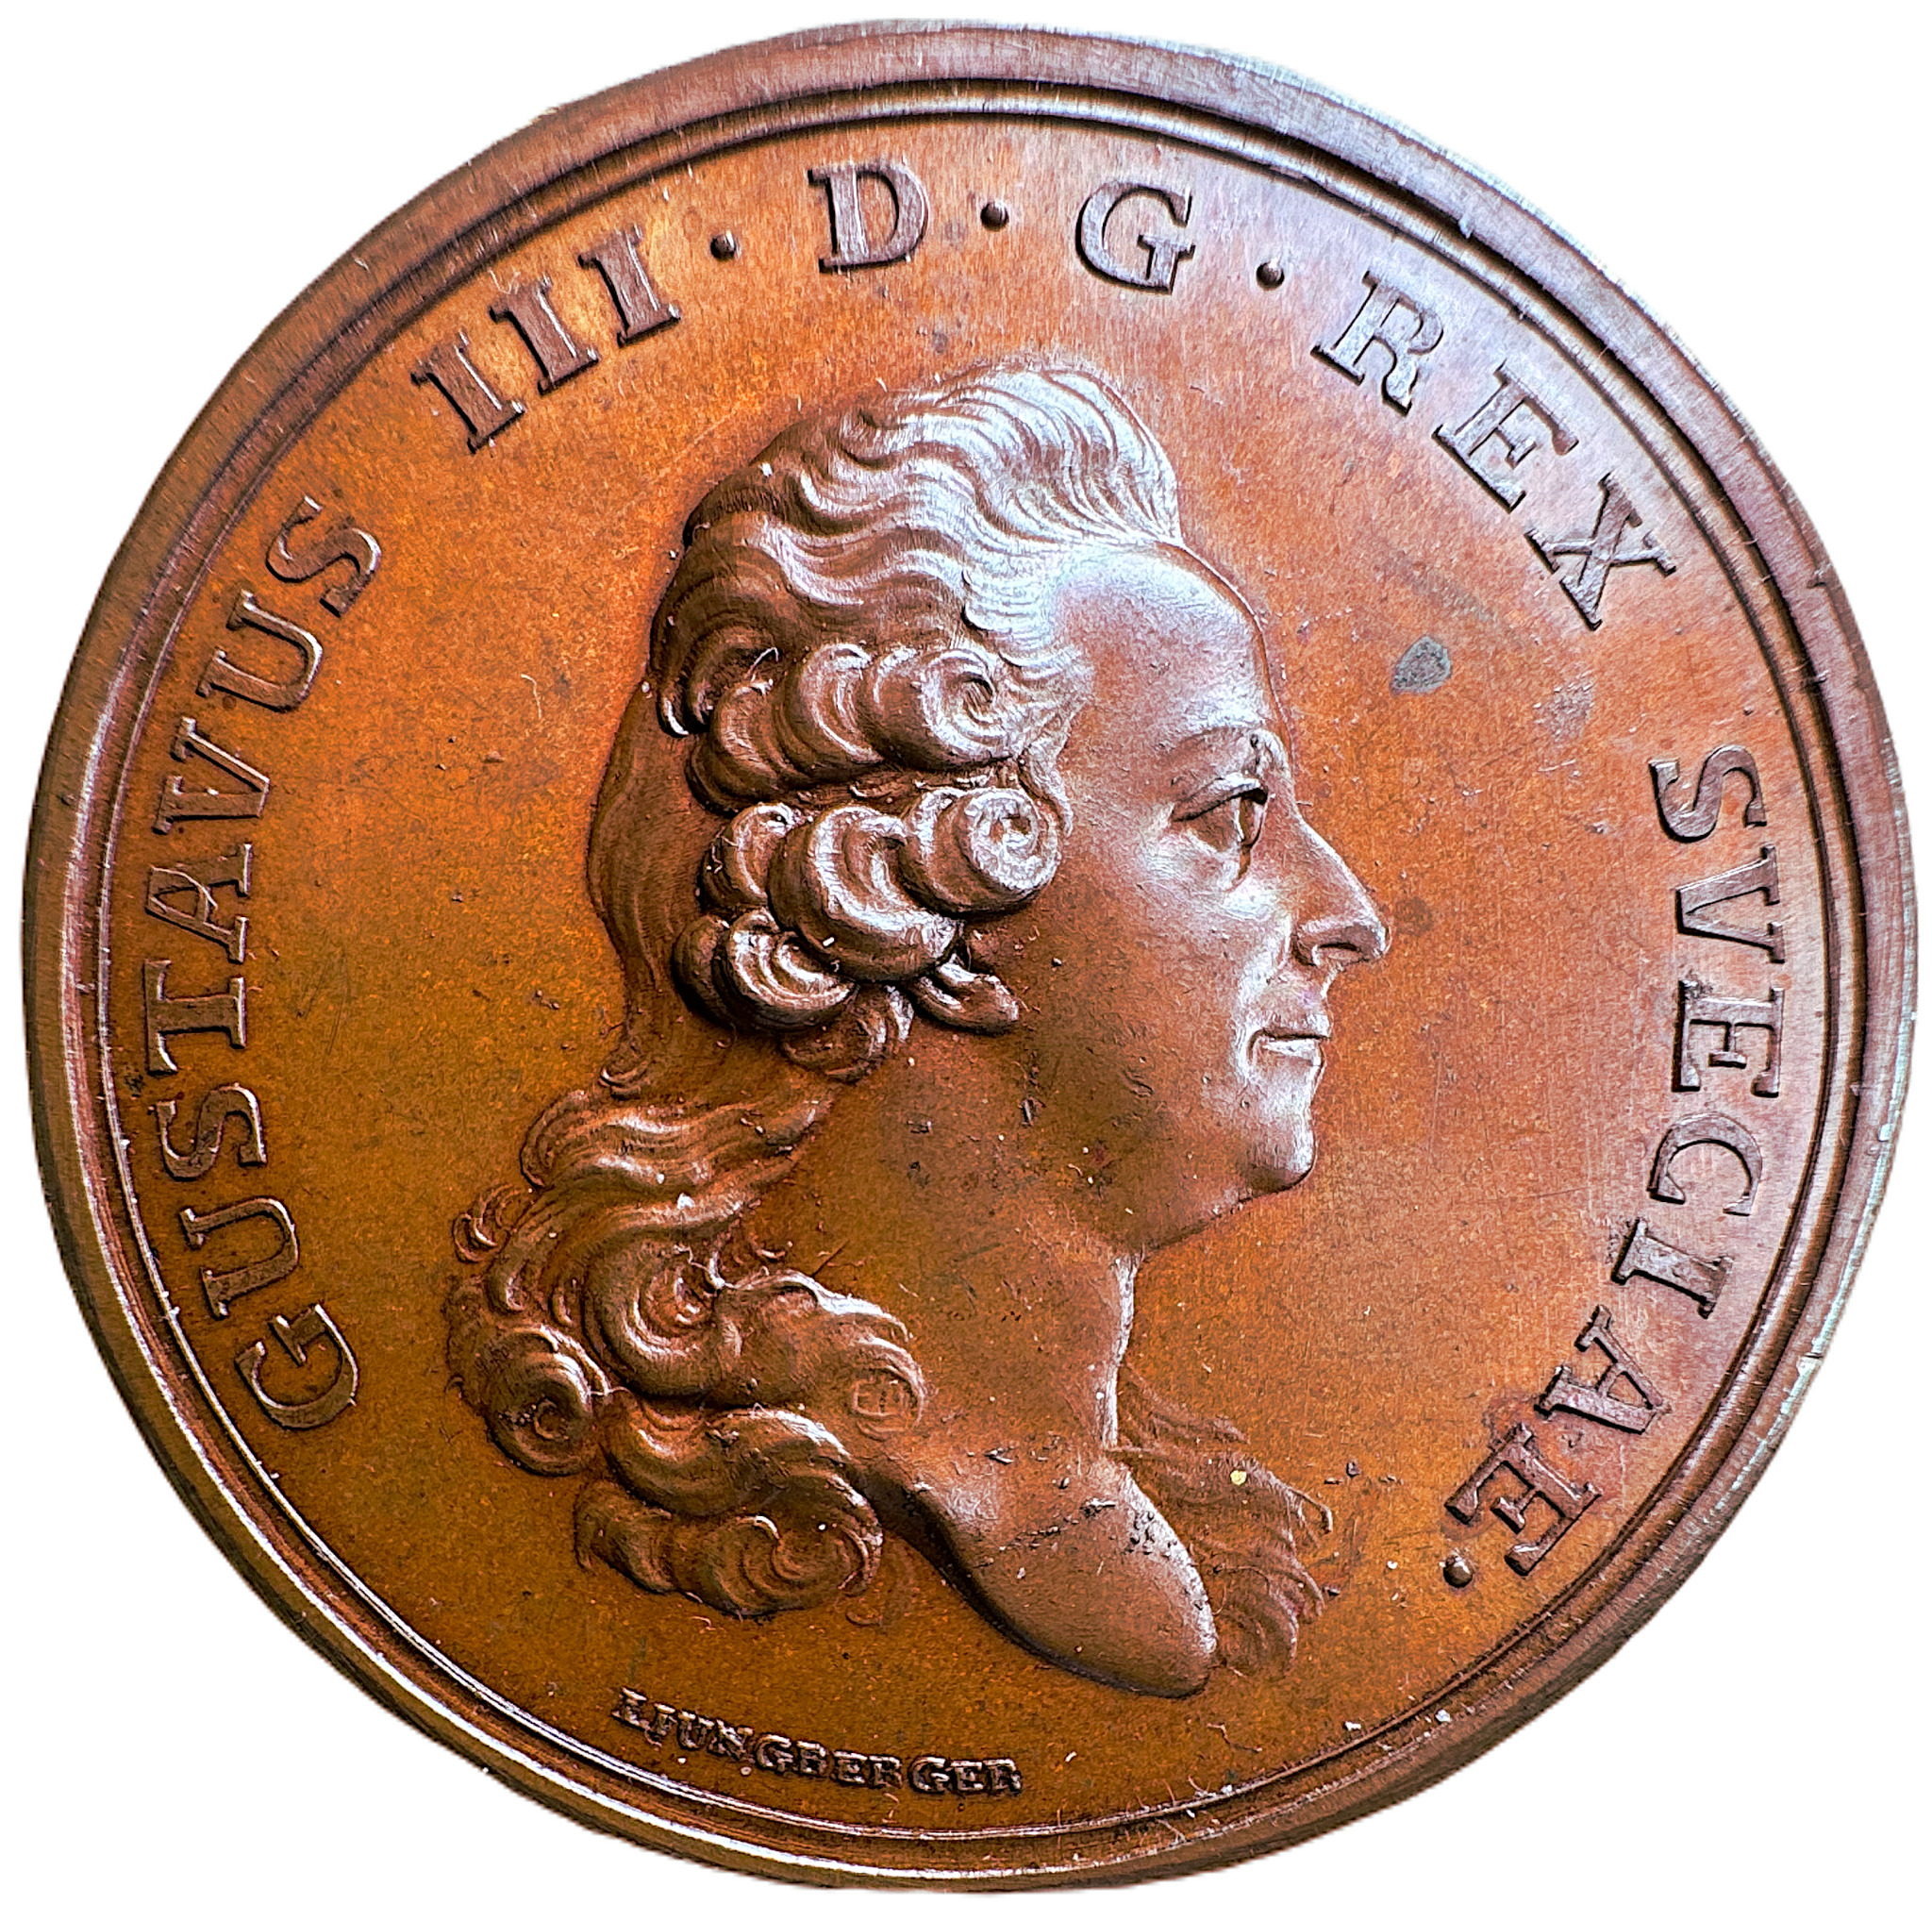 Gustav III - Den stora svältkatstrofen i Sverige 1772 - Endast detta exemplar noterat i min inventering - RRR - Ett skakande tidsdokument